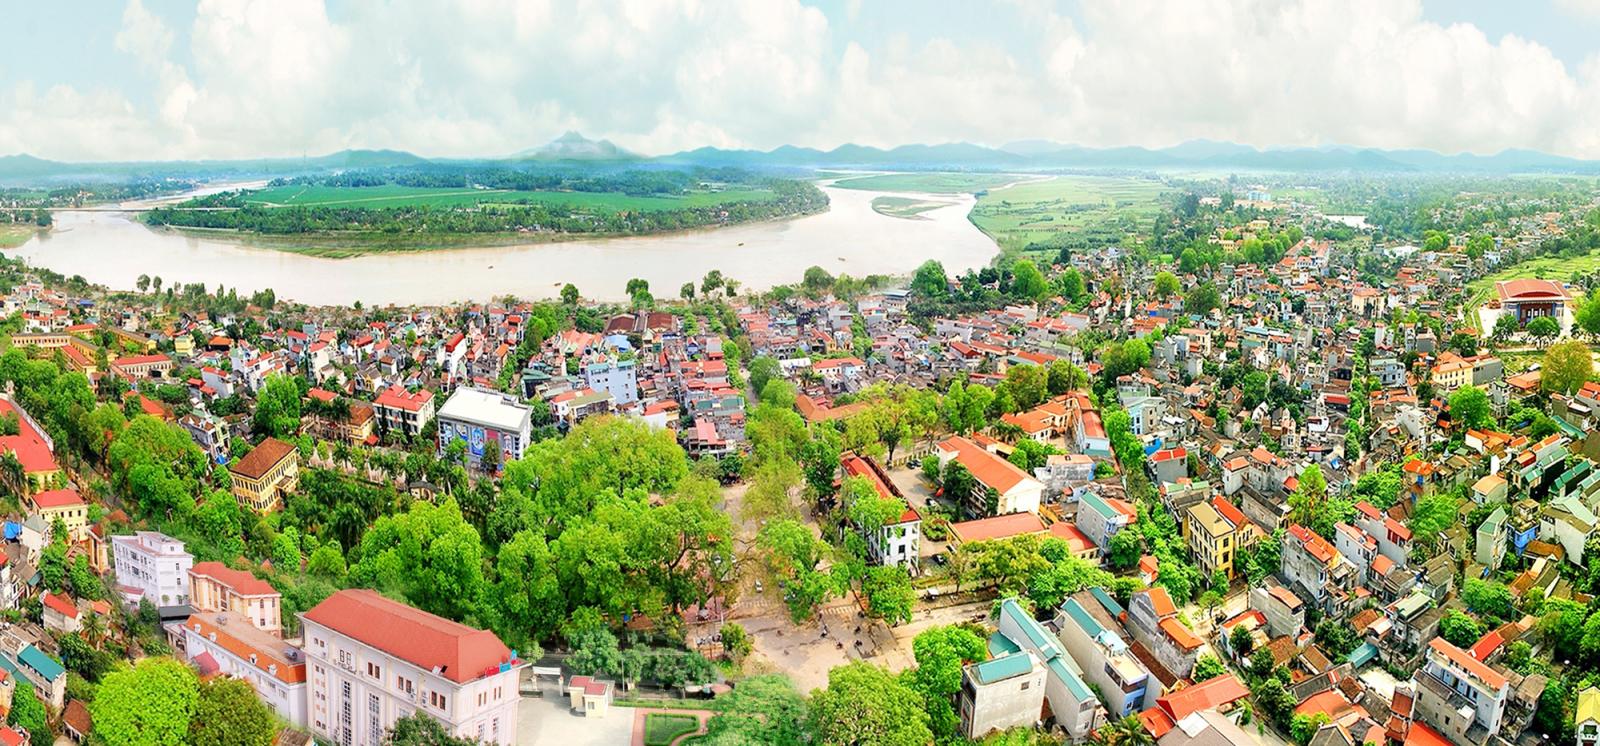 hình ảnh một góc tỉnh Phú Thọ nhìn từ trên cao